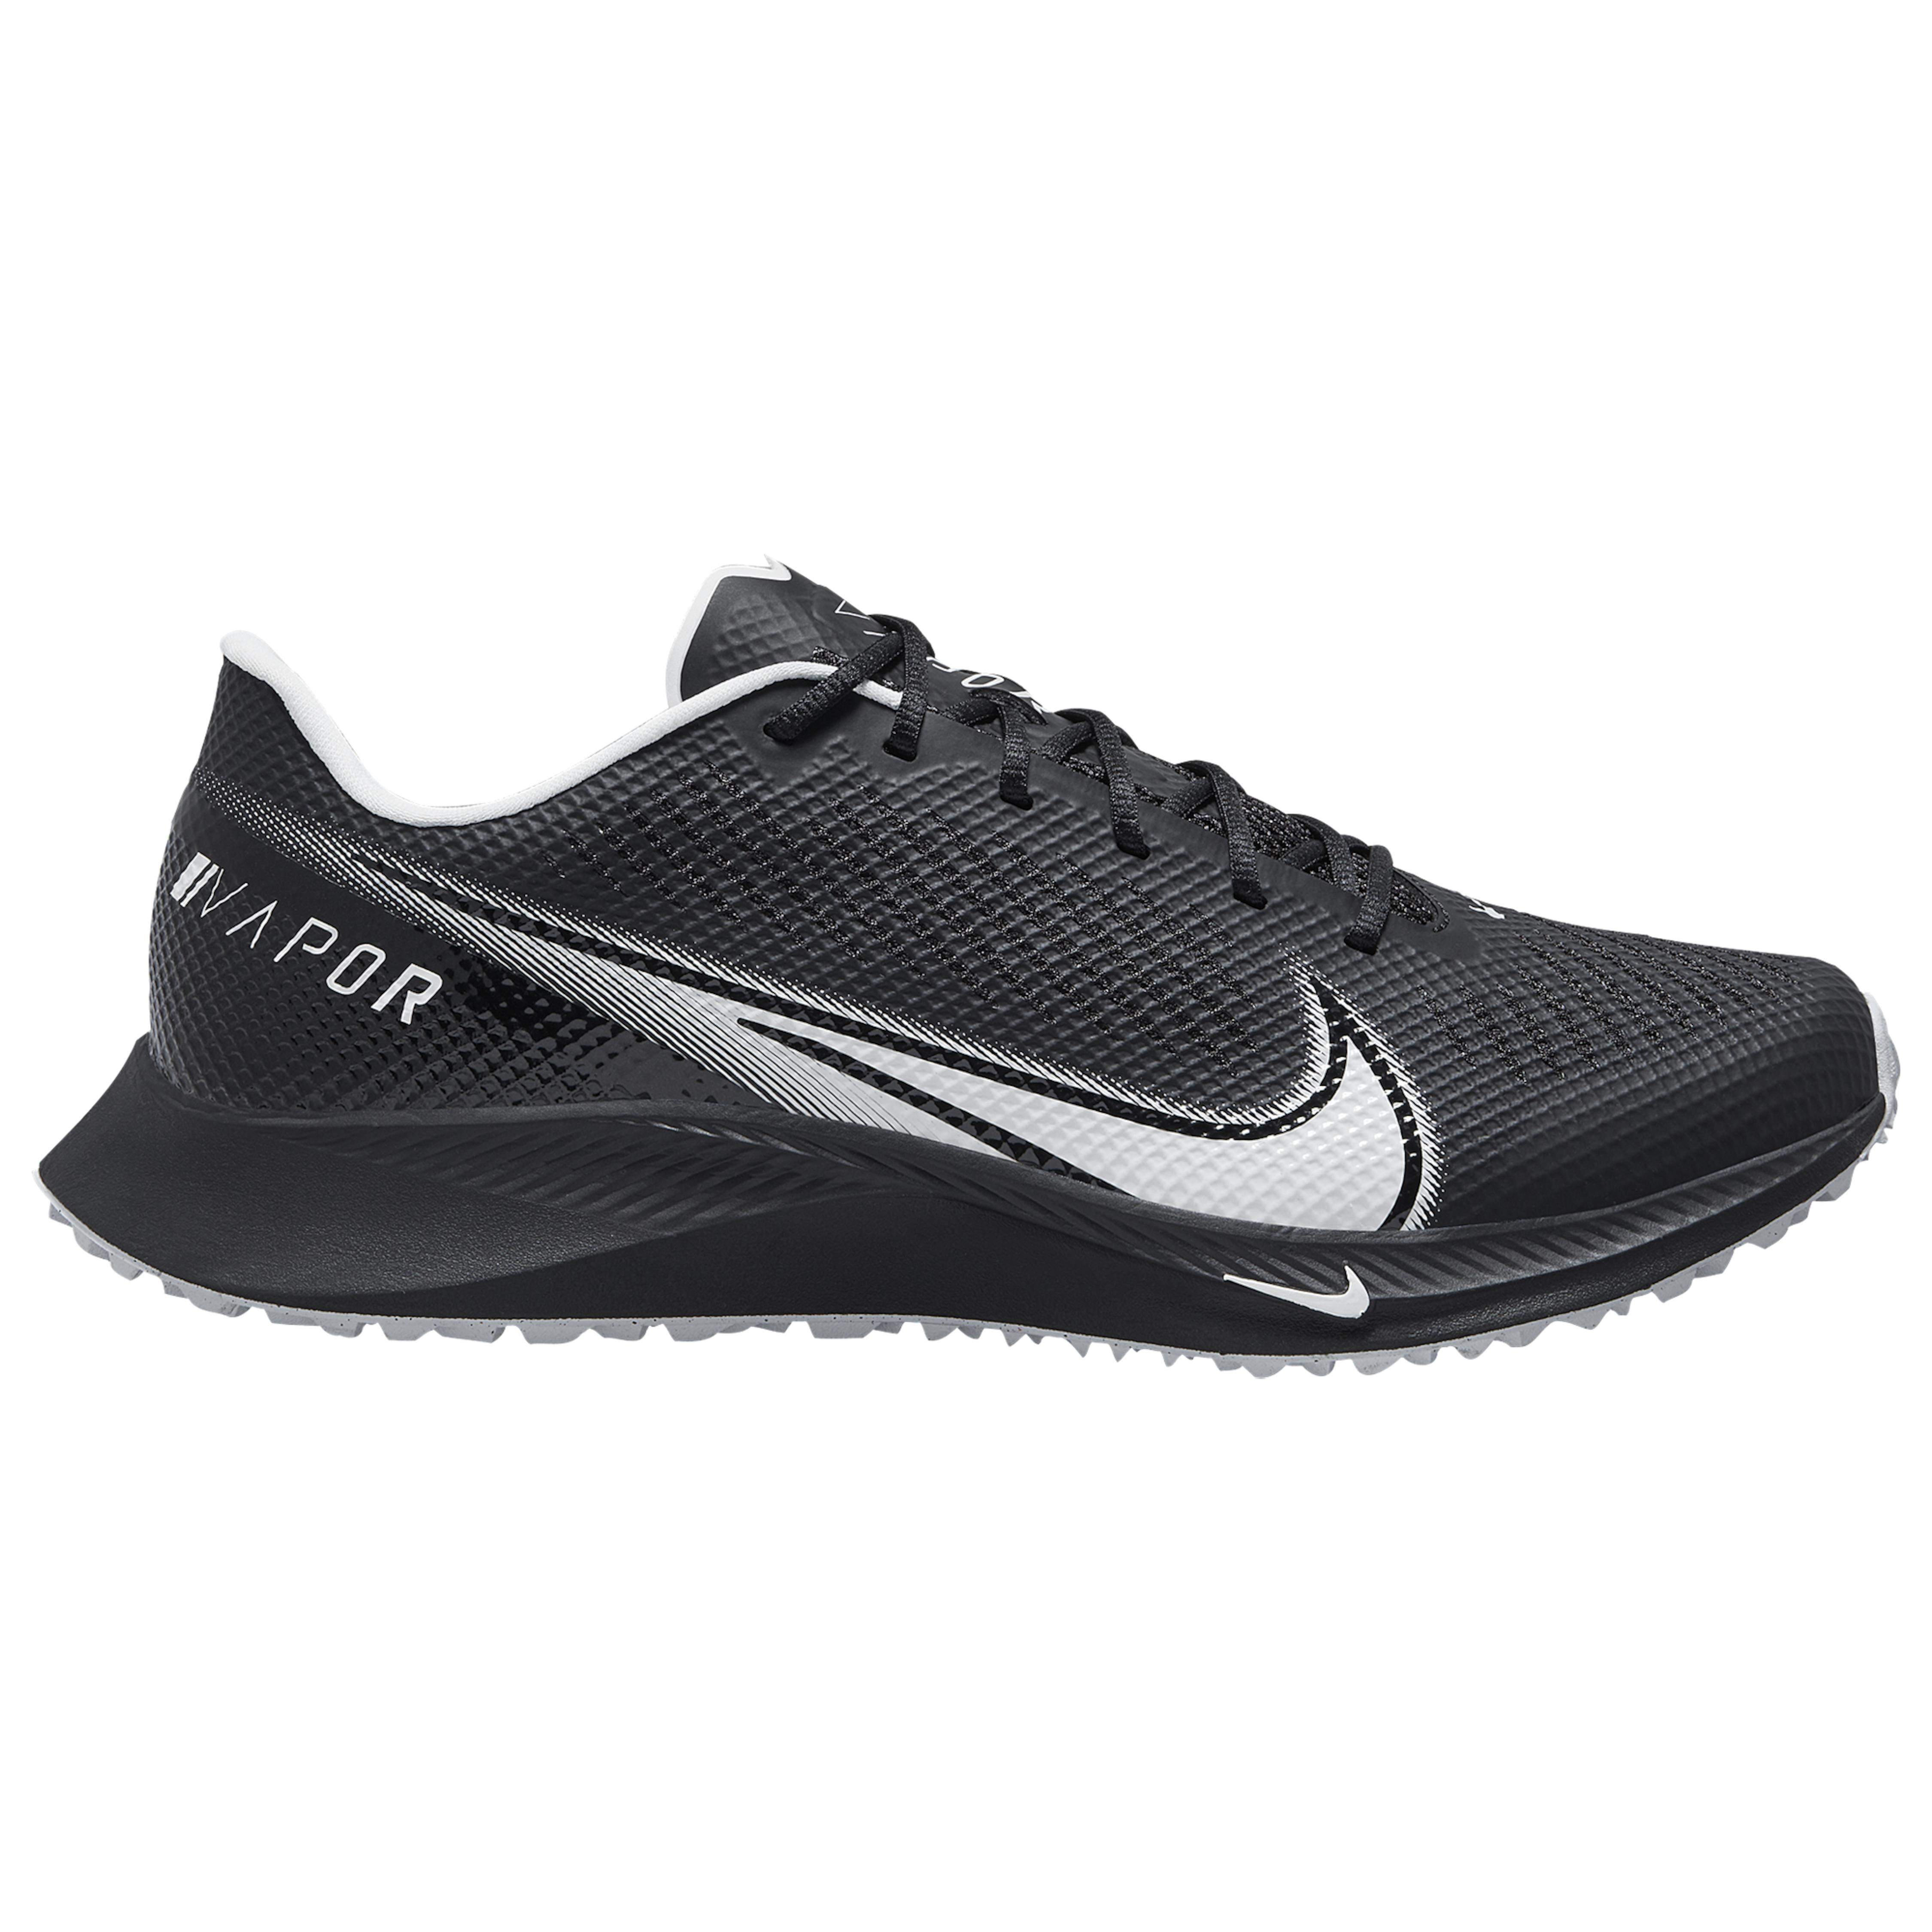 Nike Vapor Edge Turf in Black/White/Black (Black) for Men - Lyst